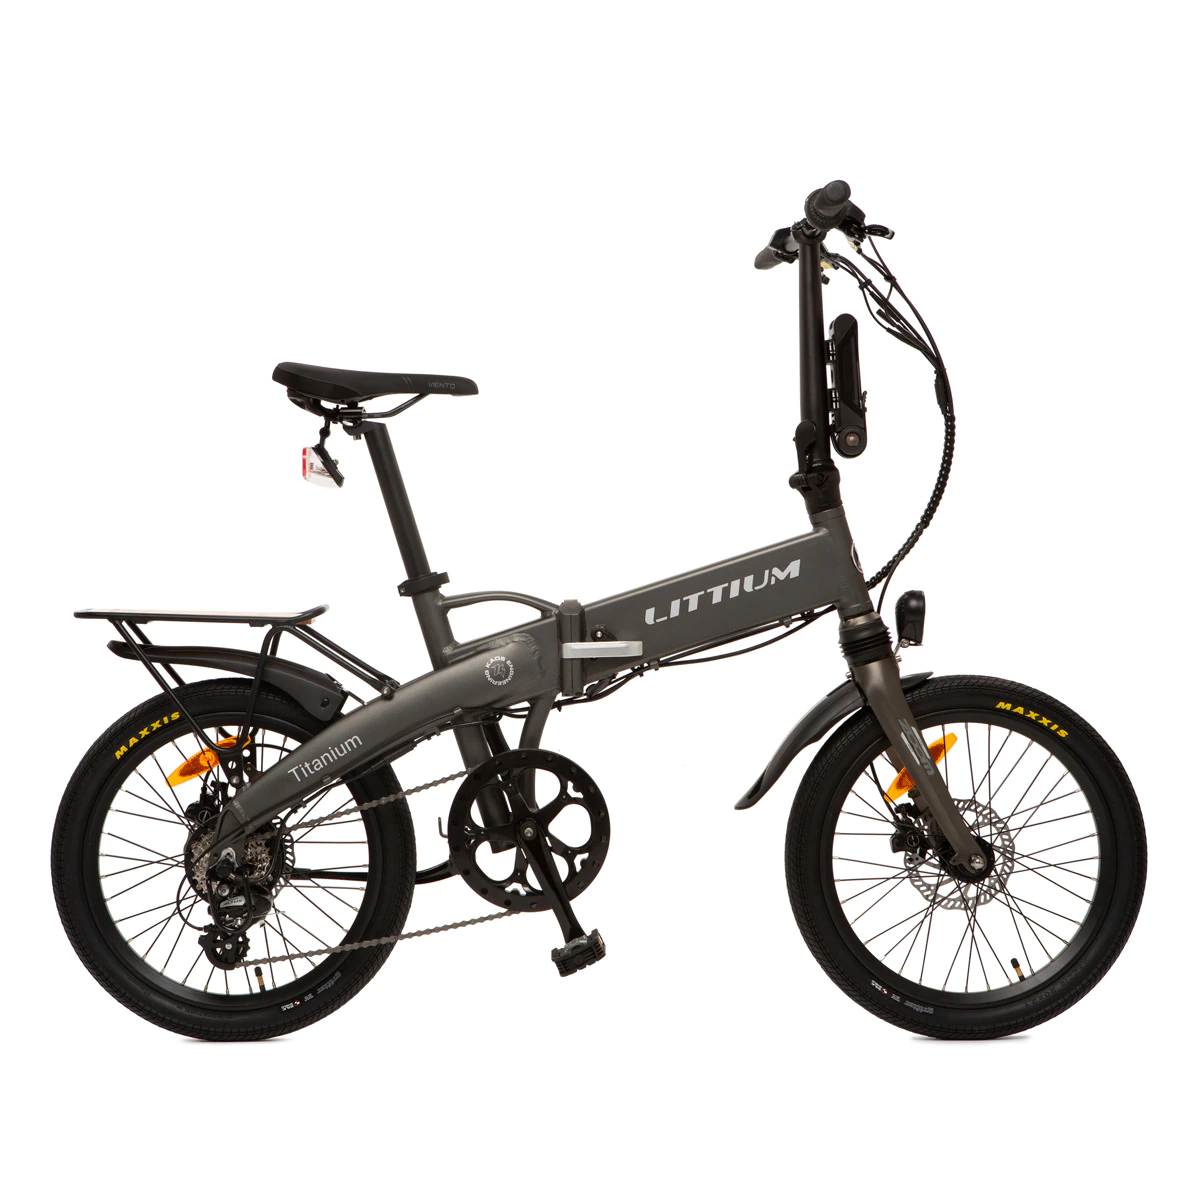 Bicicleta eléctrica plegable Ibiza Titanium 14 Littium